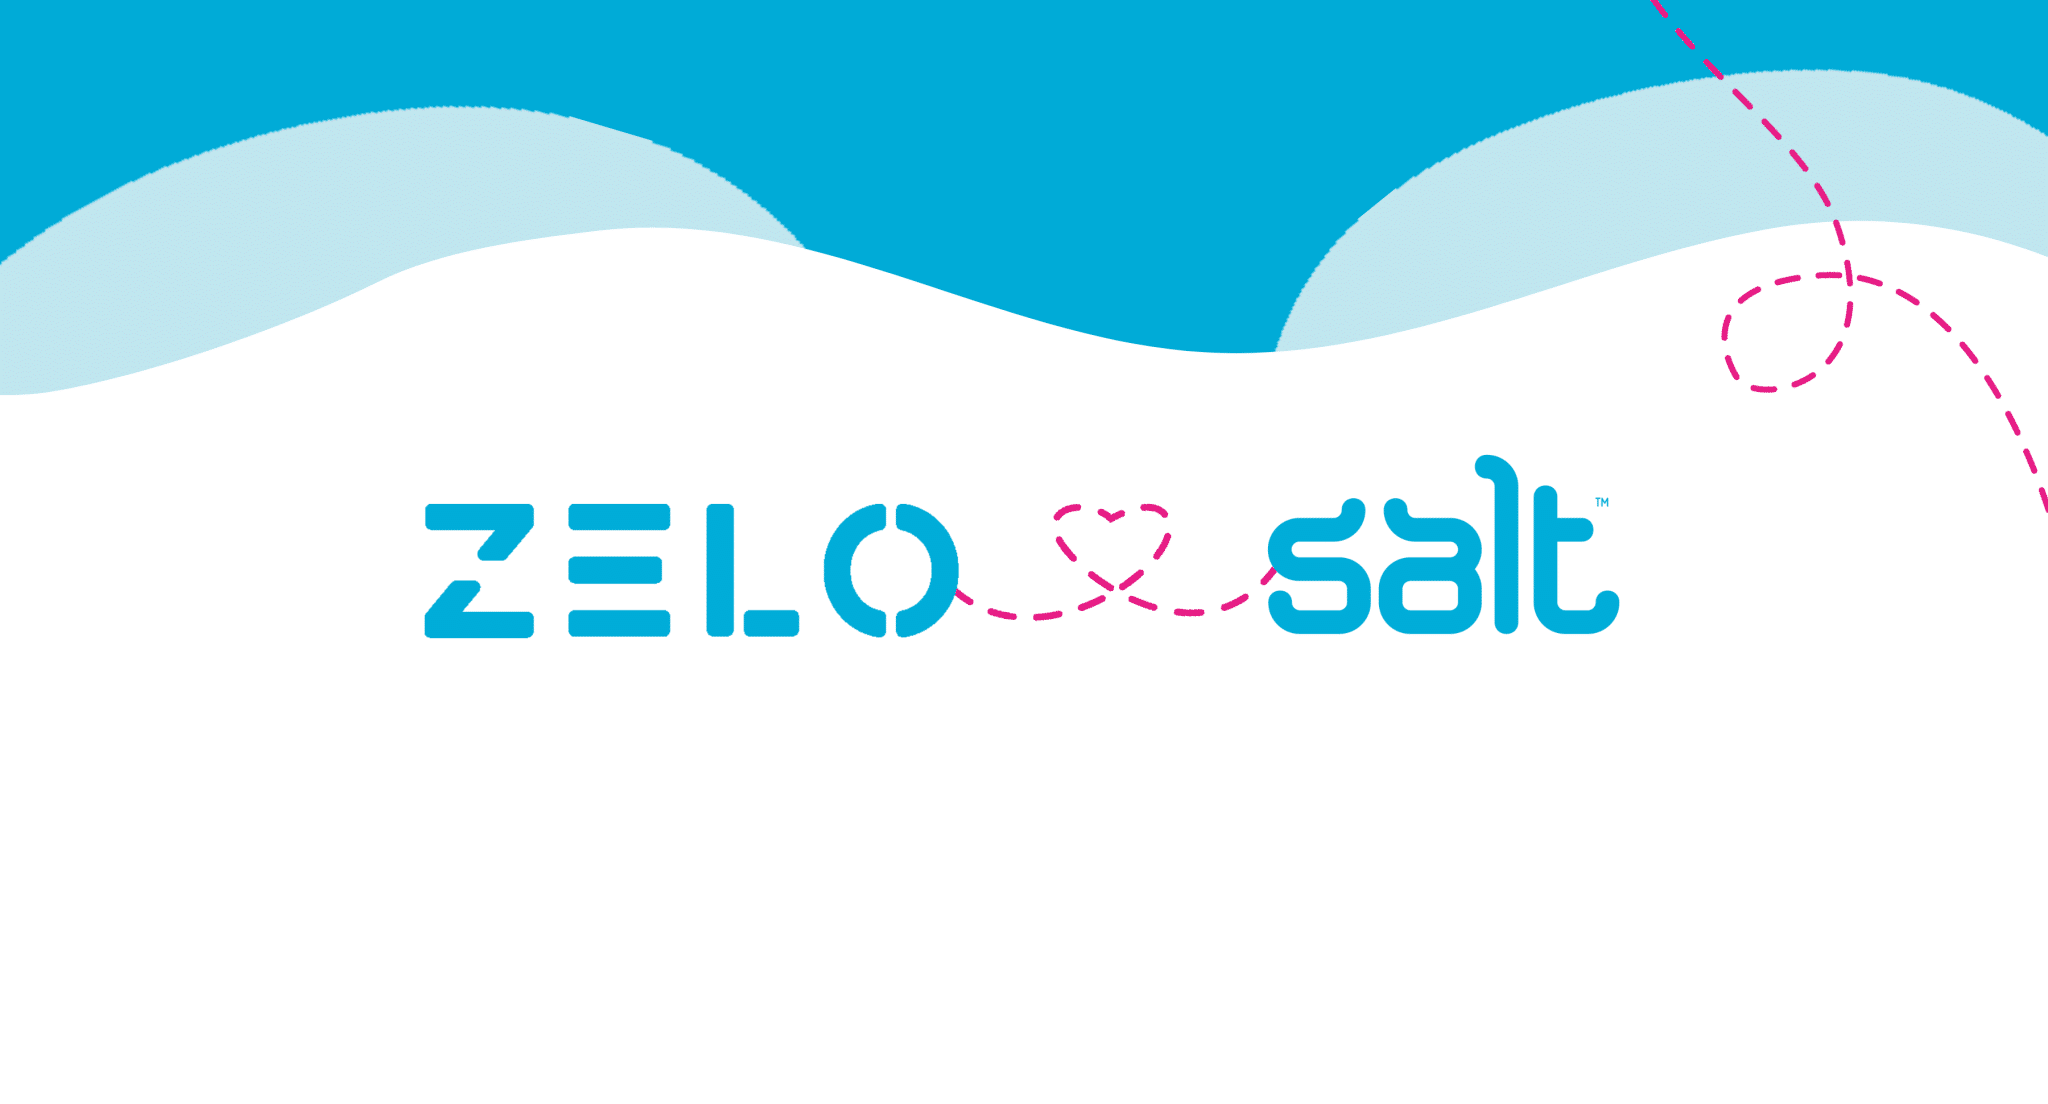 Zelo and Salt